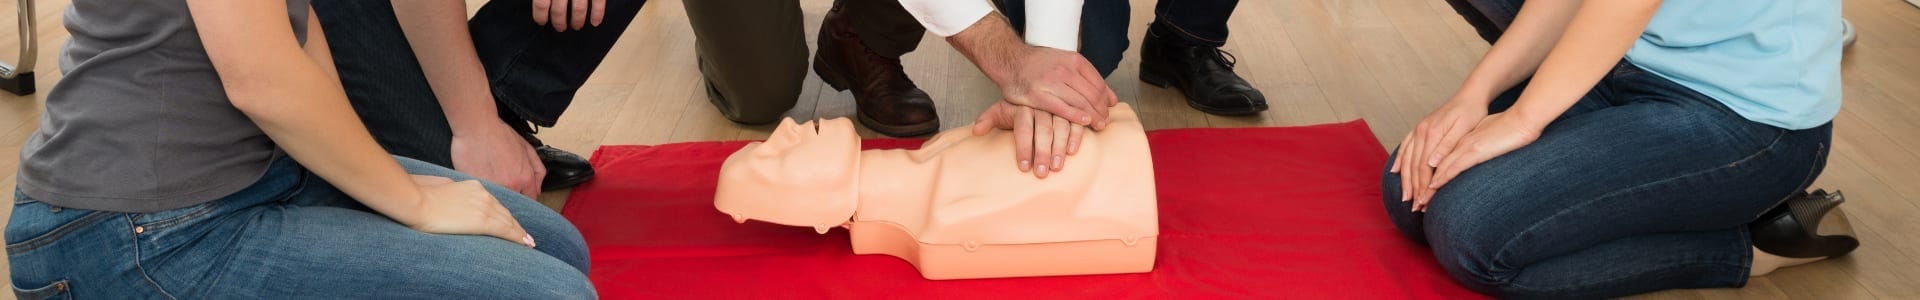 Herz-Druck-Massage an einer Puppe